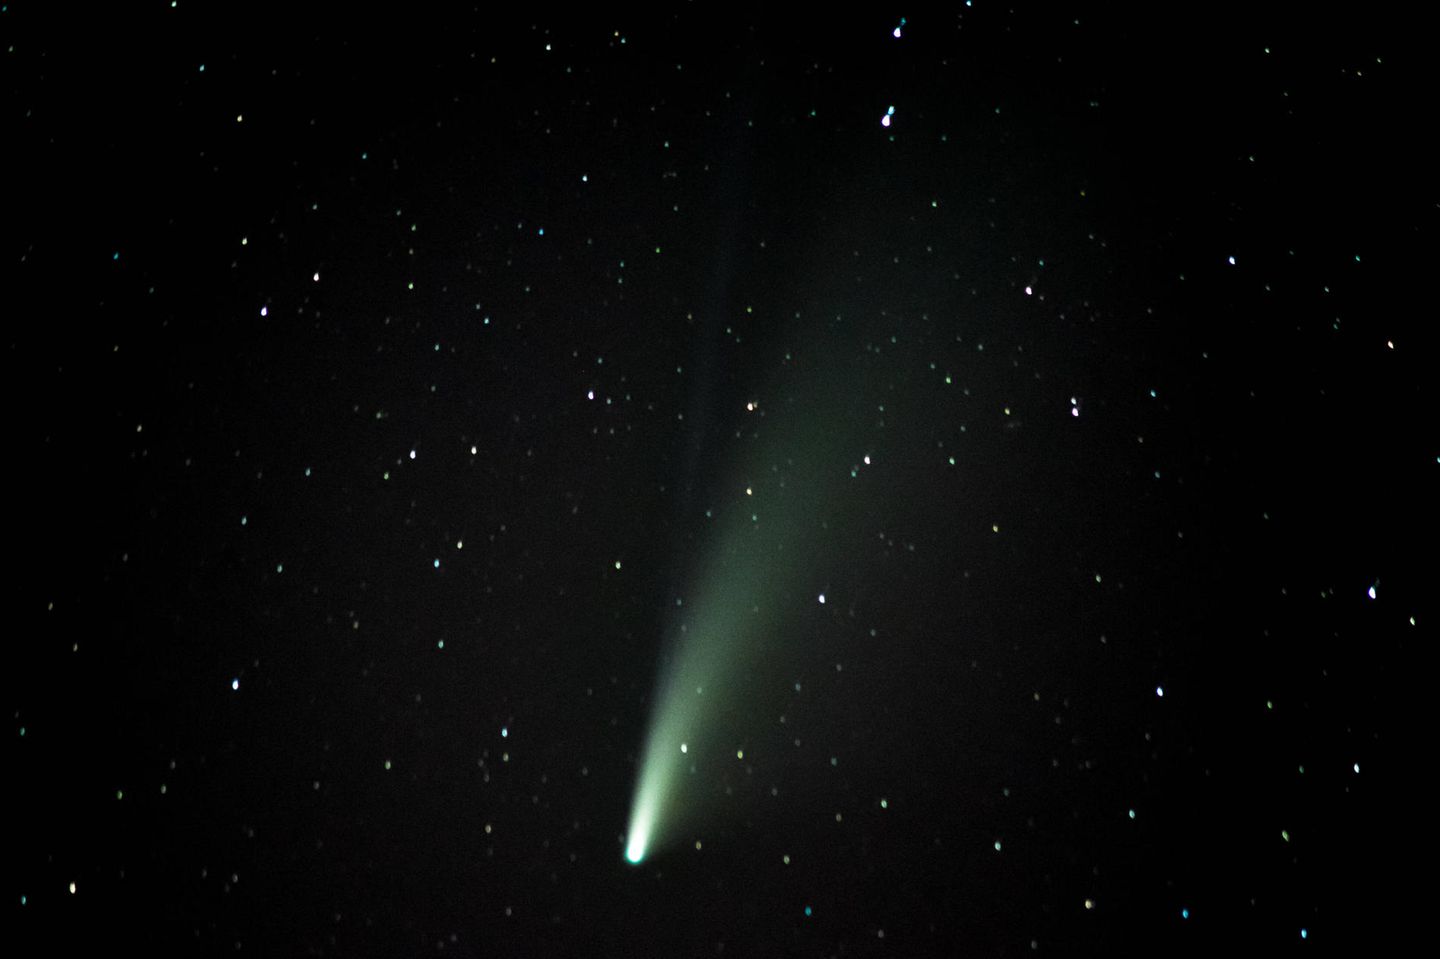 2020 war Komet Neowise über Europa zu sehen. Wenn das Wetter mitspielt läßt sich Komet Leonard am Dezemberhimmel beobachten